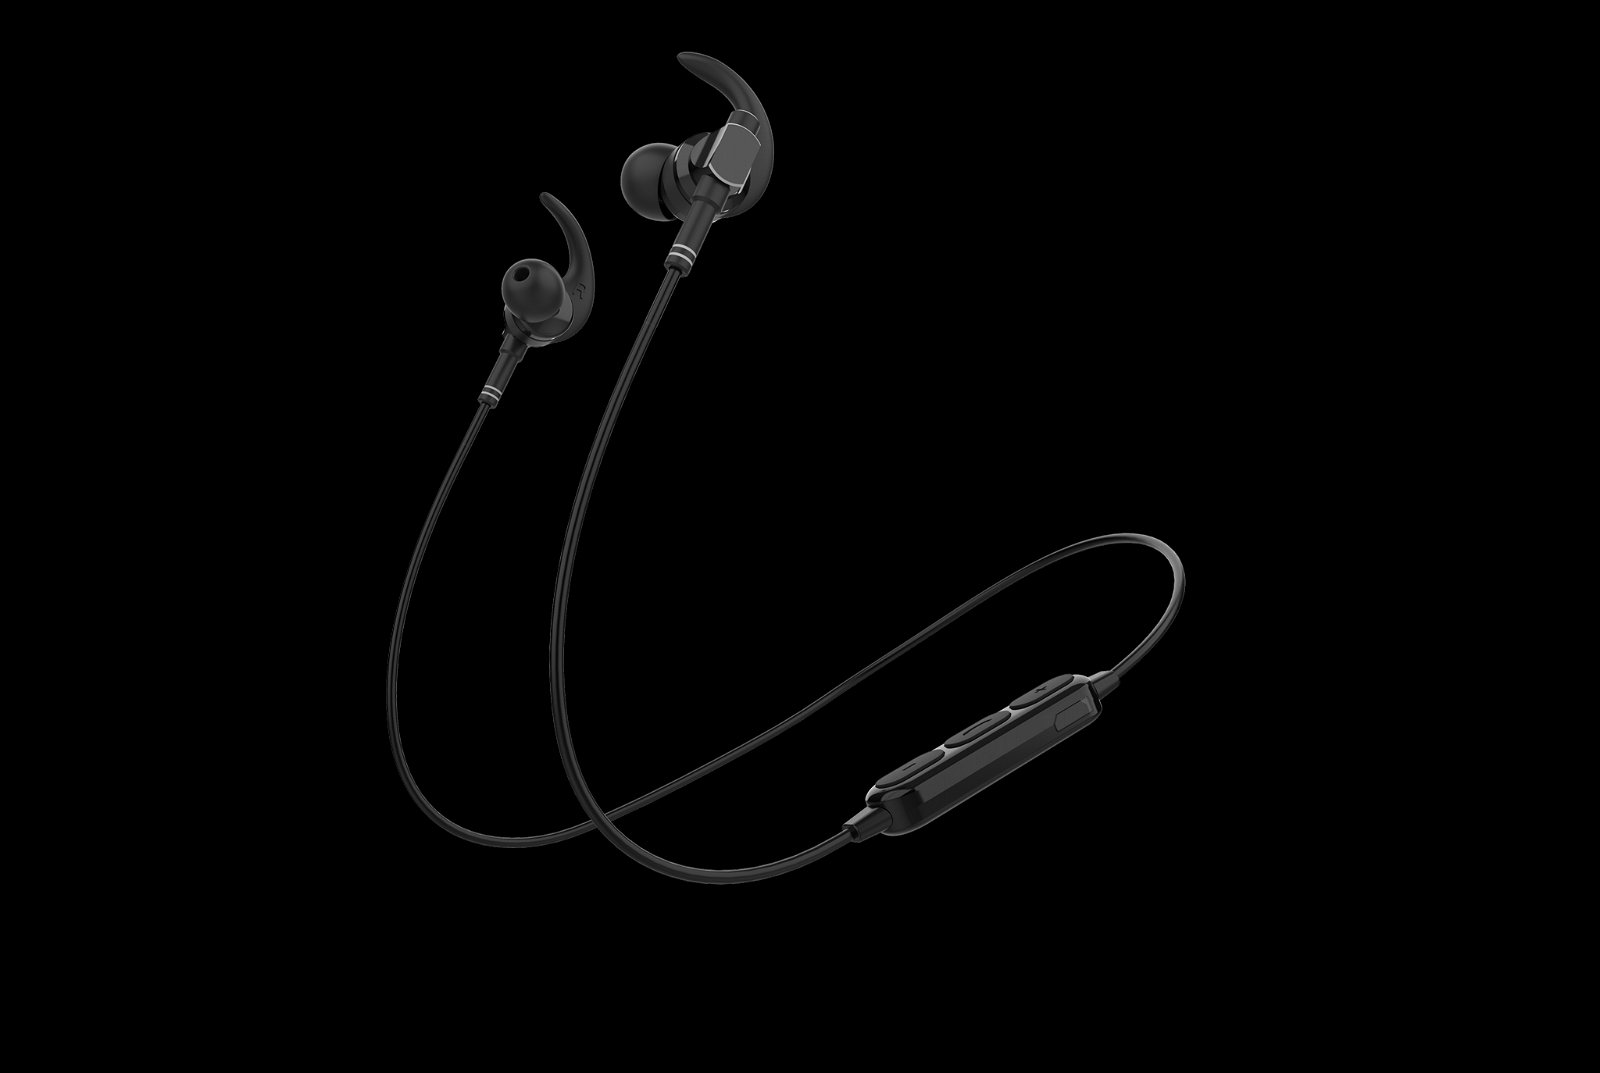 L400 In-Ear Metal Earbuds